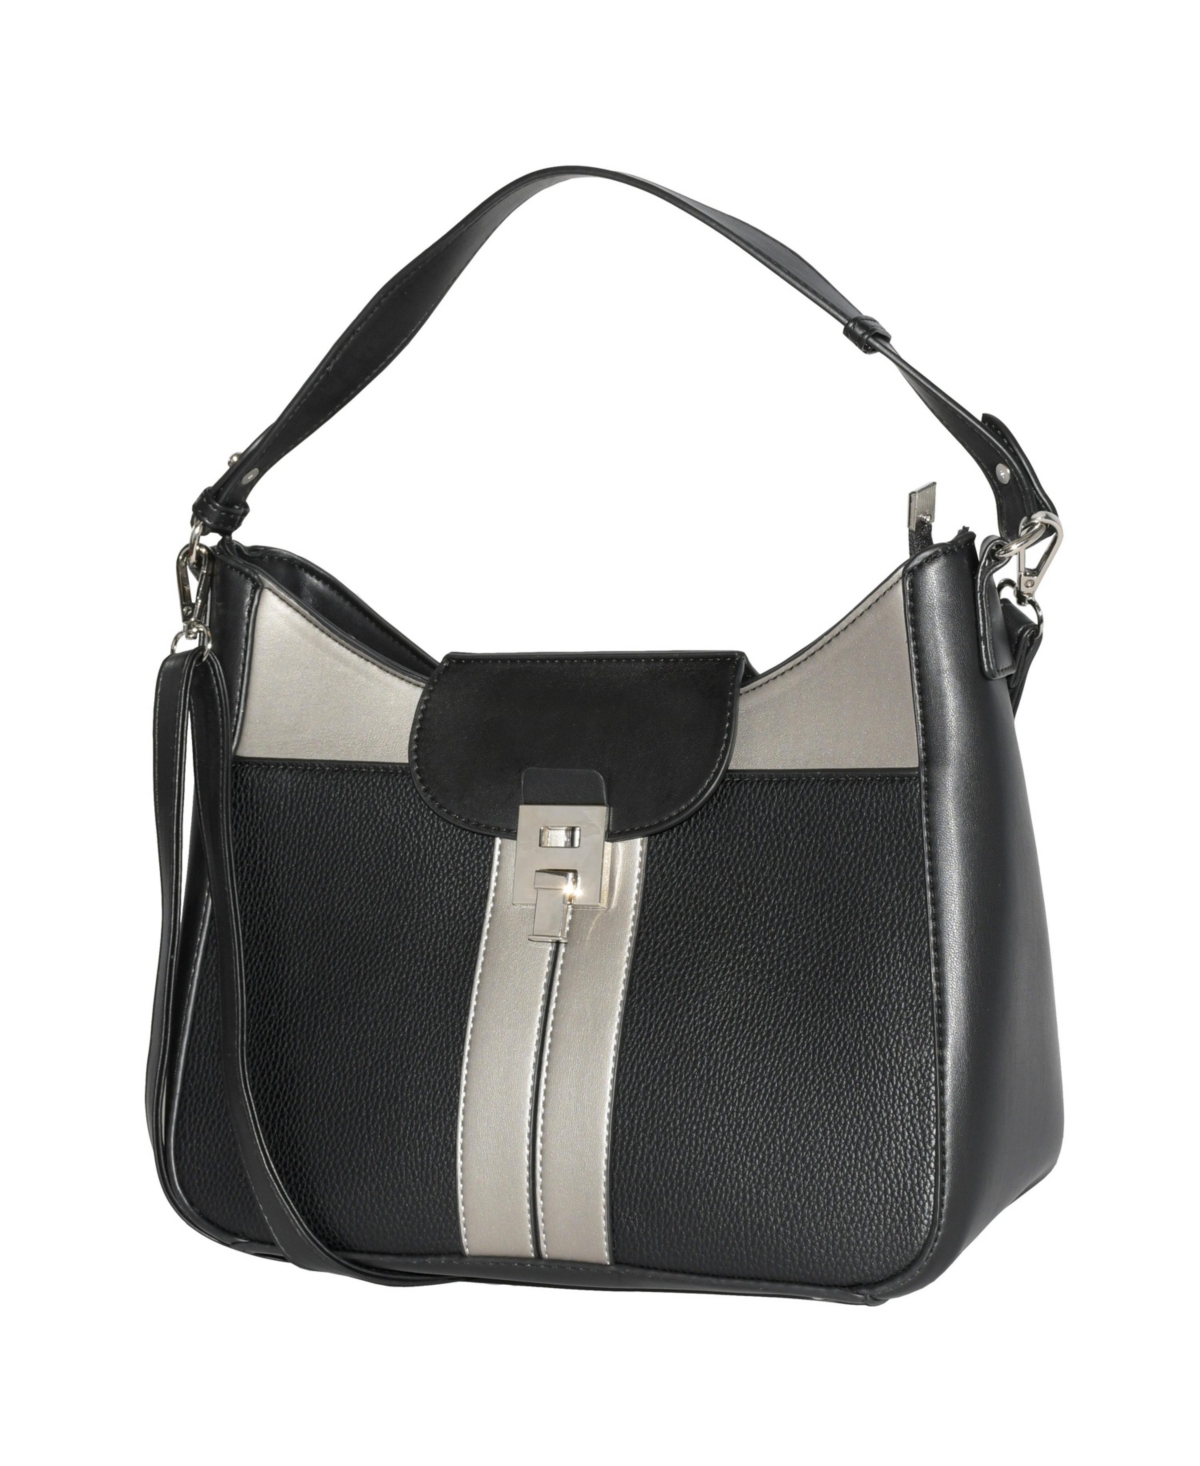 Ladies' Shoulder Bag with Color Block Design - Black and pewter